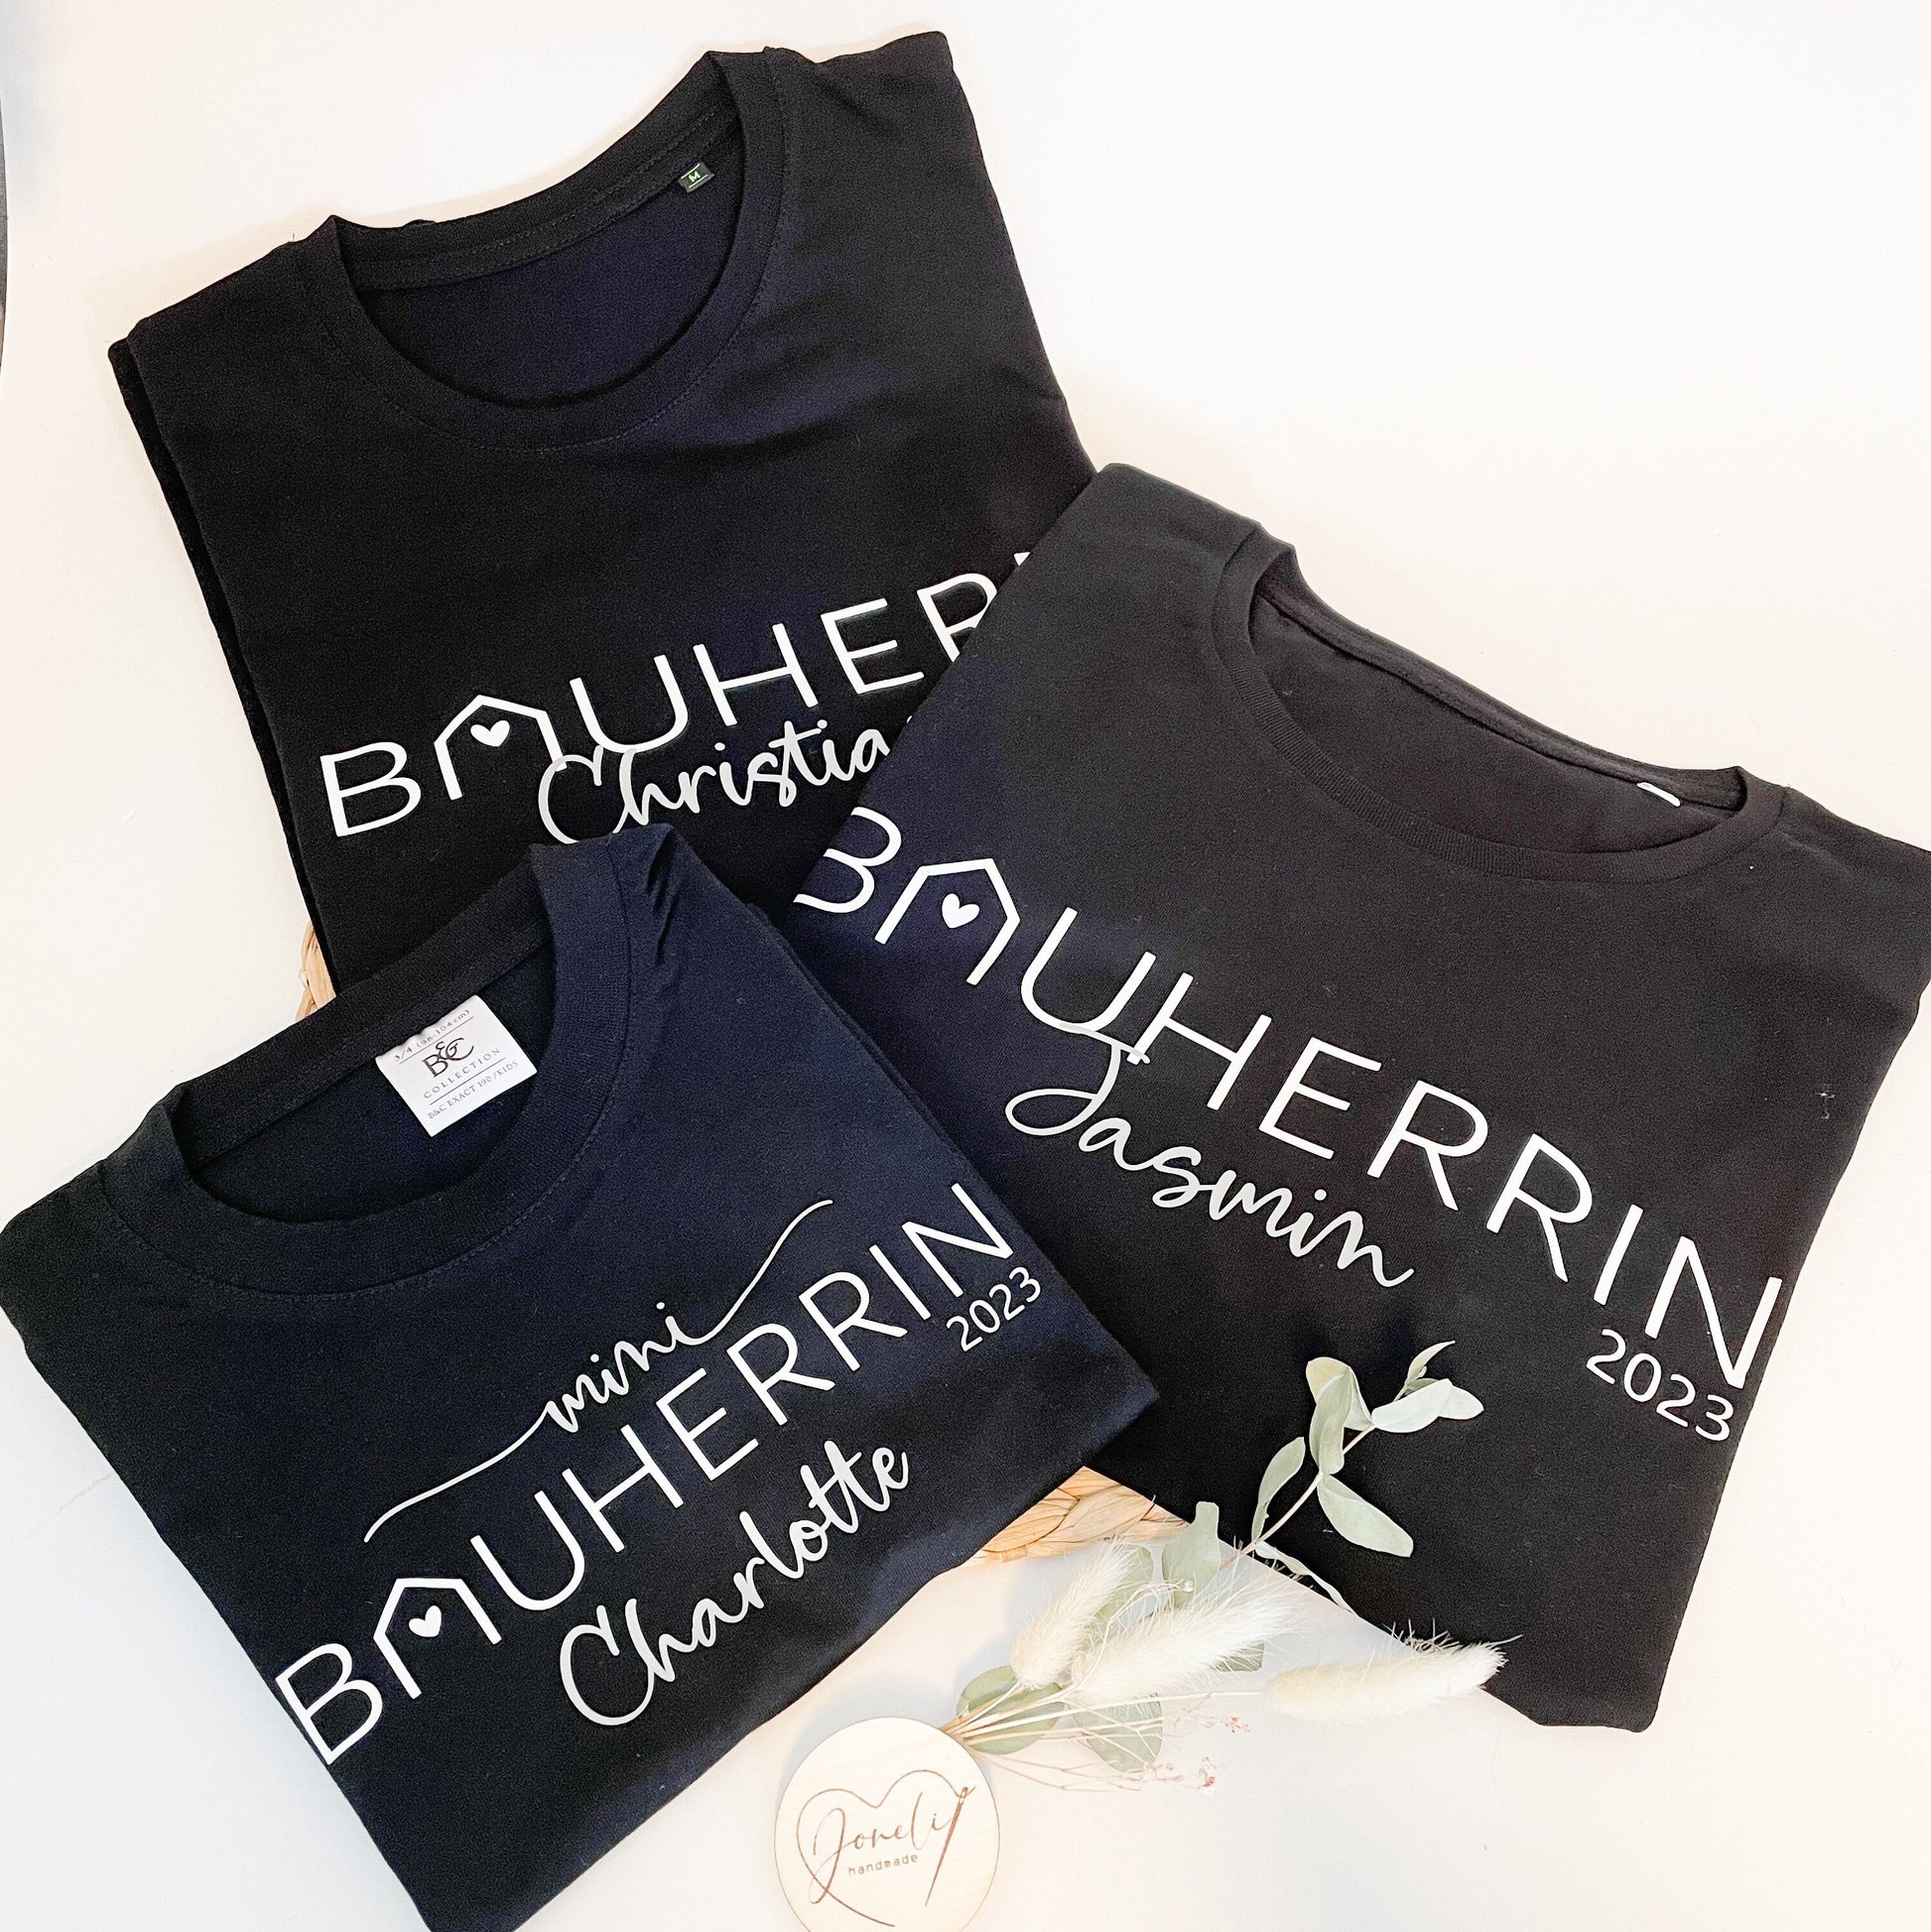 BAUHERR / BAUHERRIN personalisiertes T-Shirt / Geschenk für Bauherren